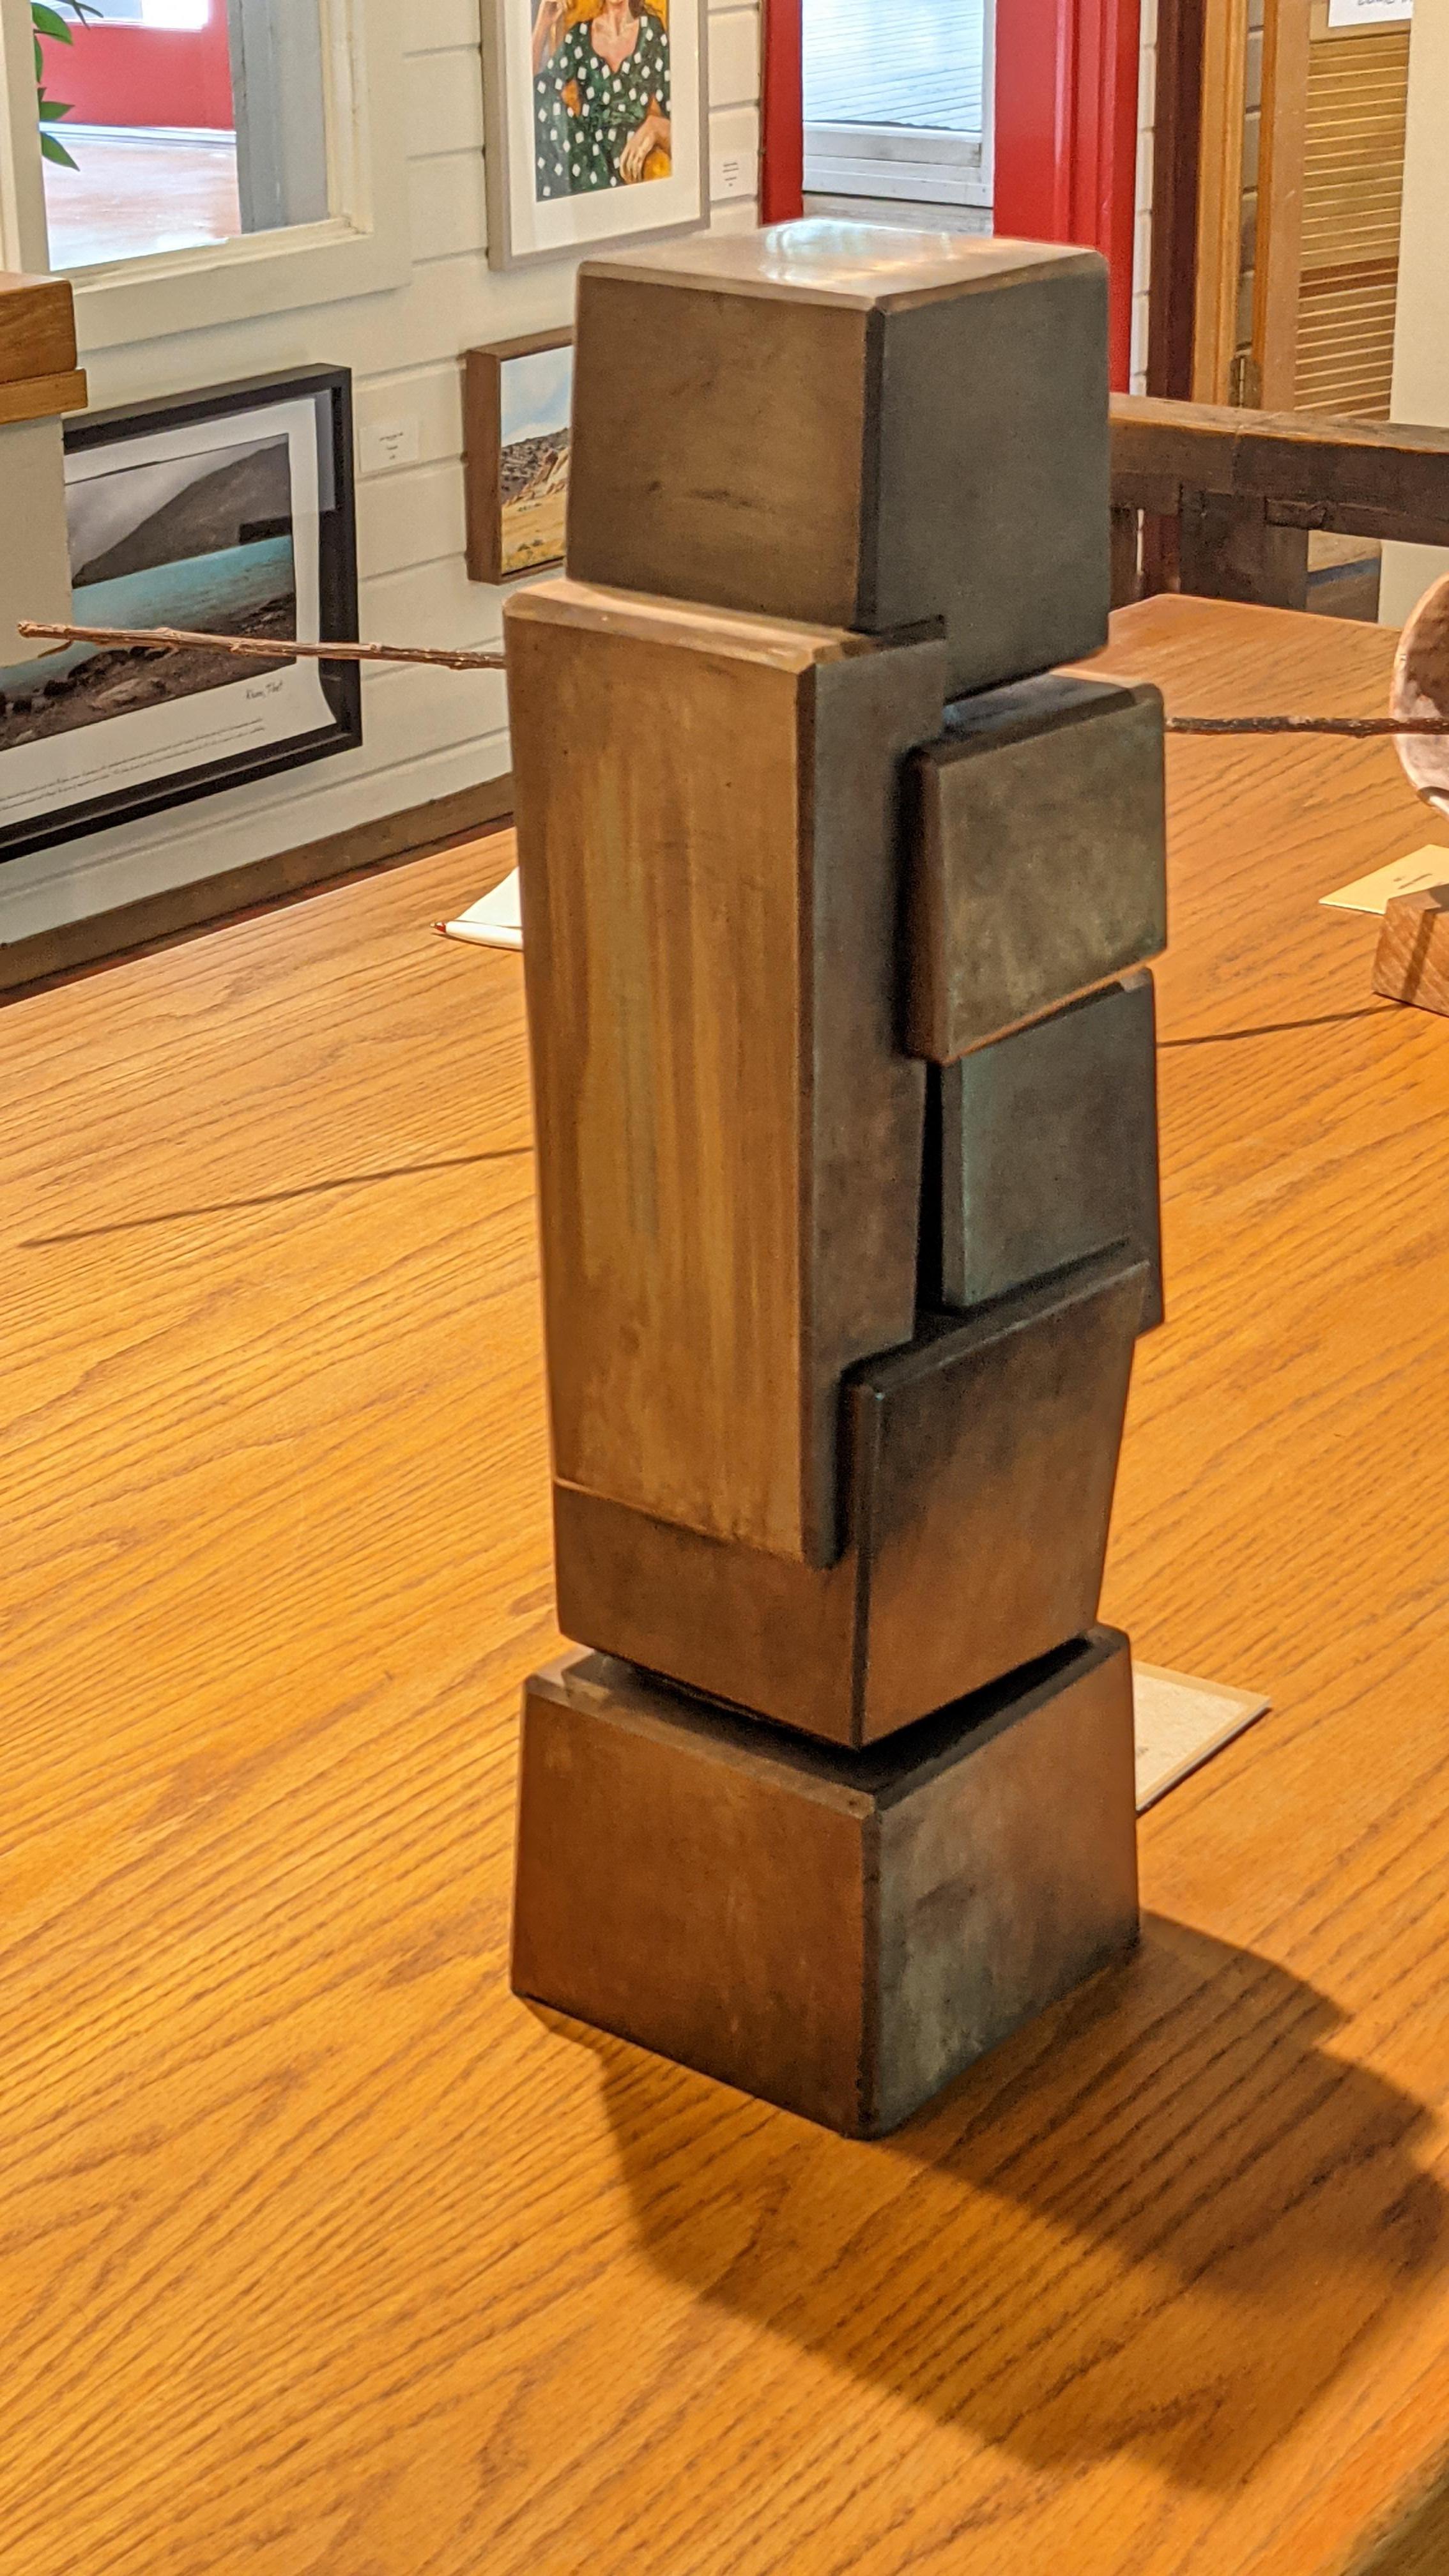 #Nr. 138, von Cordell Taylor, Stahl, 18 x 6 x 5 Zoll, $3.800

Der internationale Bildhauer Cordell Taylor wurde in Wyoming geboren und erhielt seine Ausbildung in Bildhauerei an der Universität von Utah. Er ist bekannt für seine abstrakten